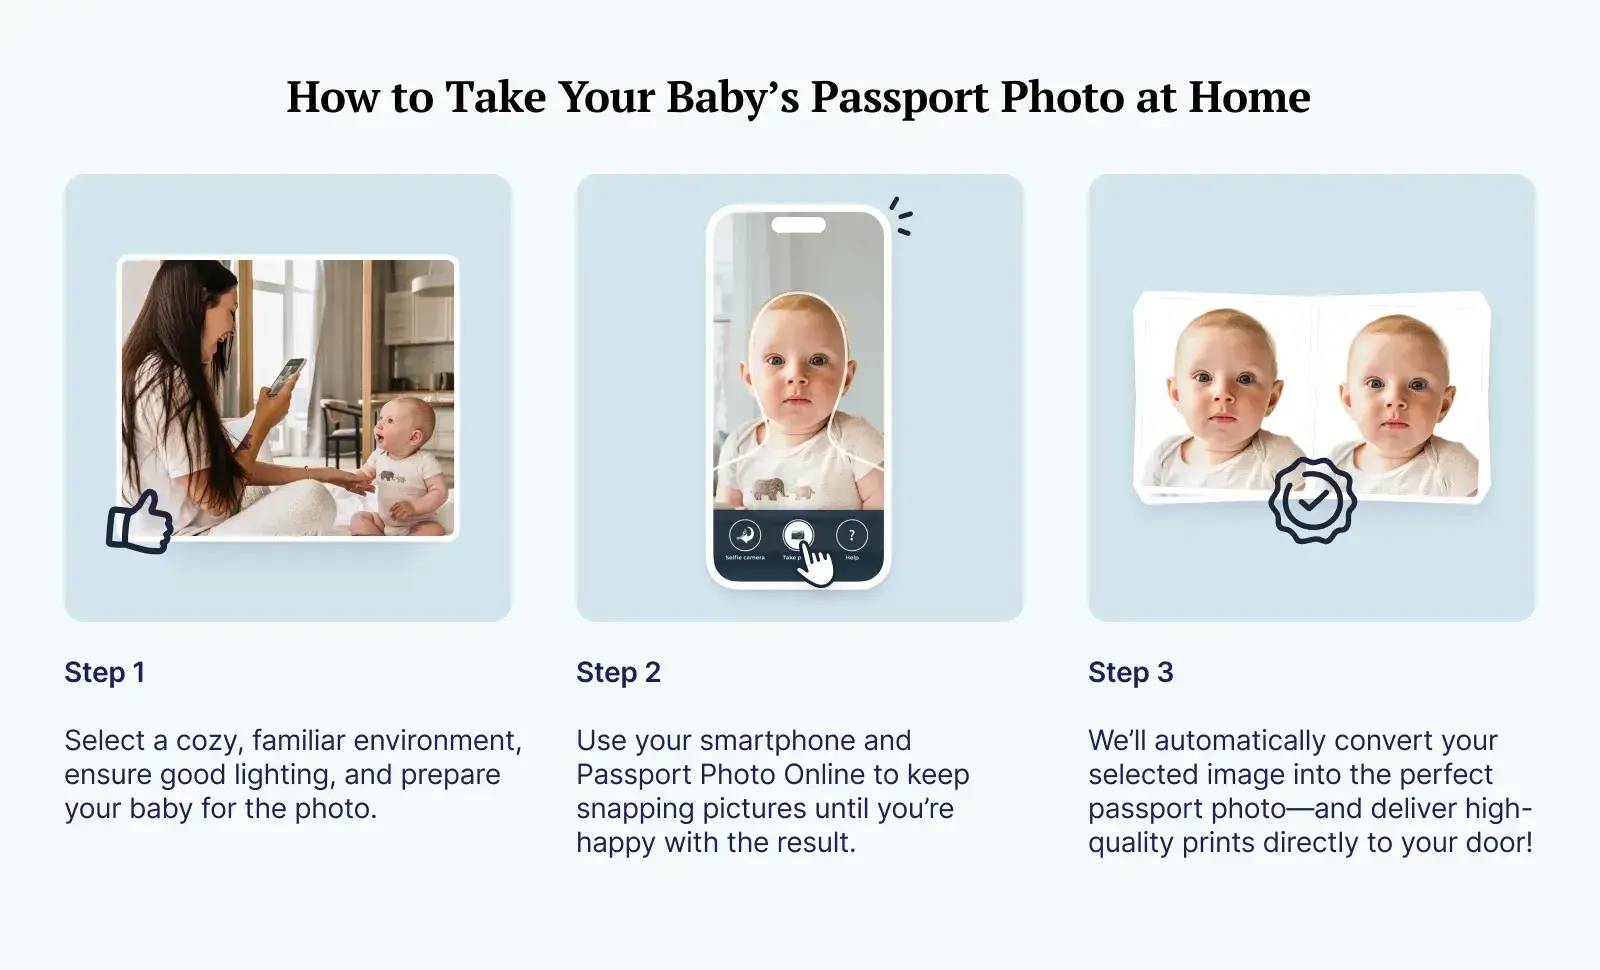 Baby passport photo at home